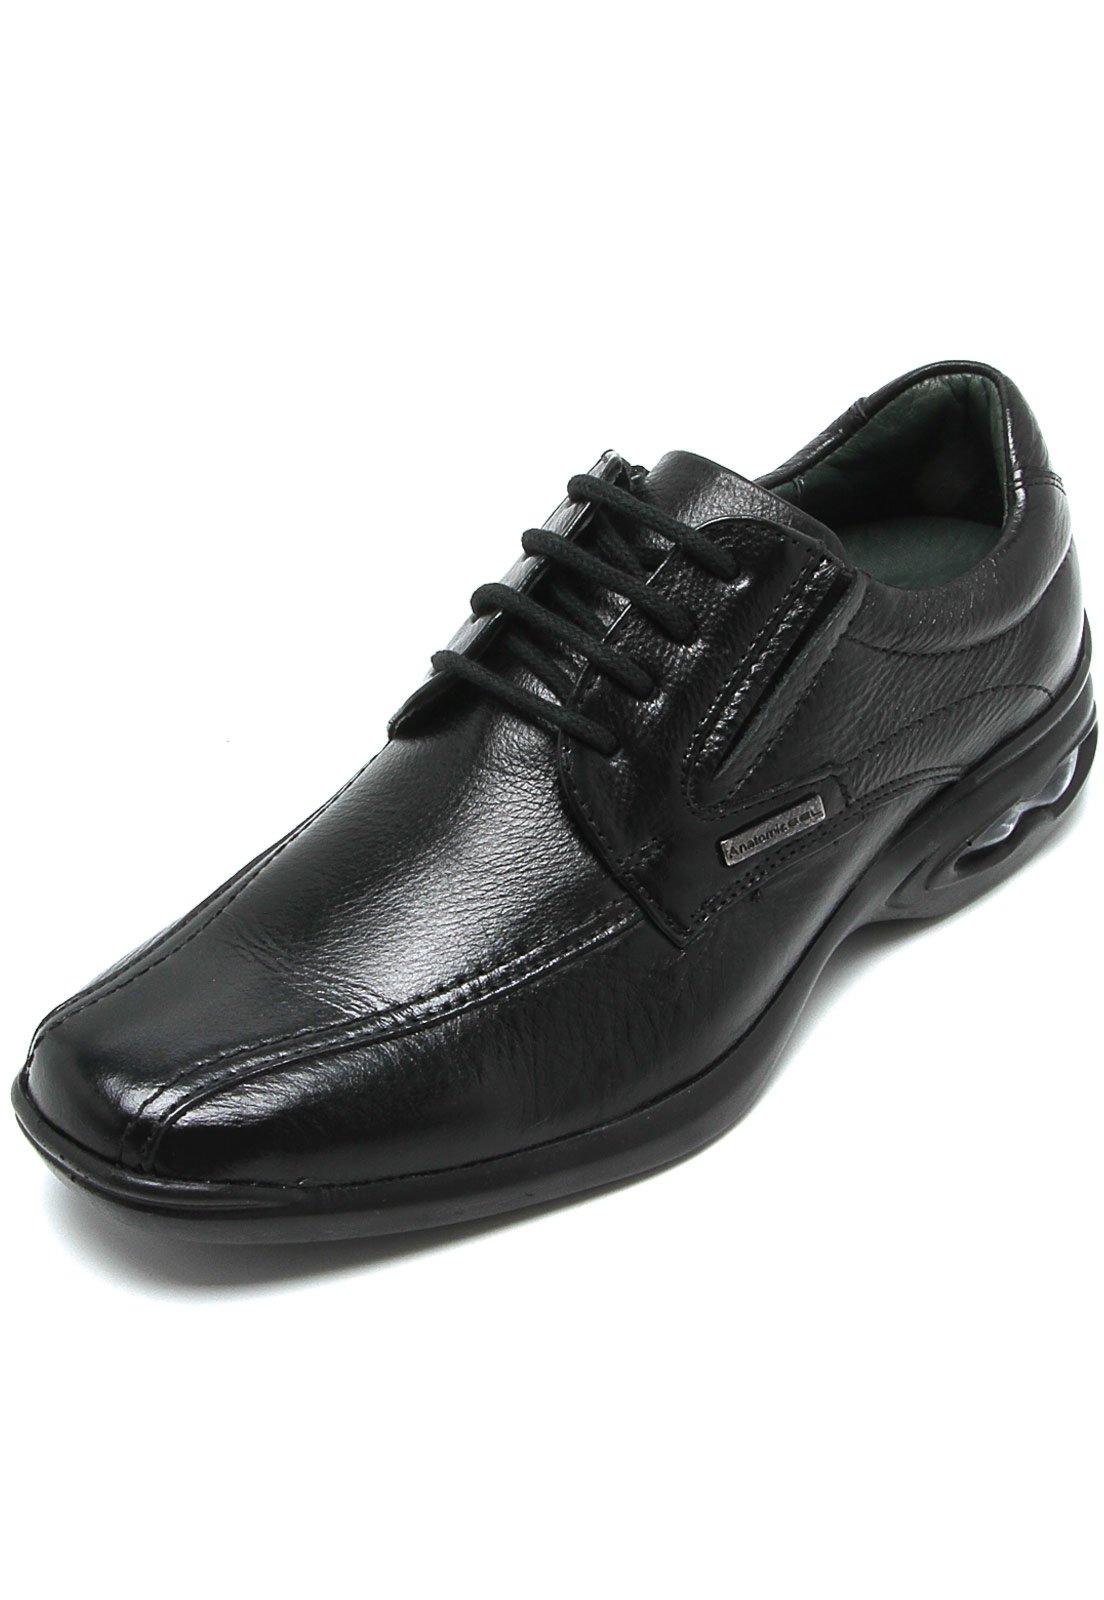 sapato masculino anatomic gel preto